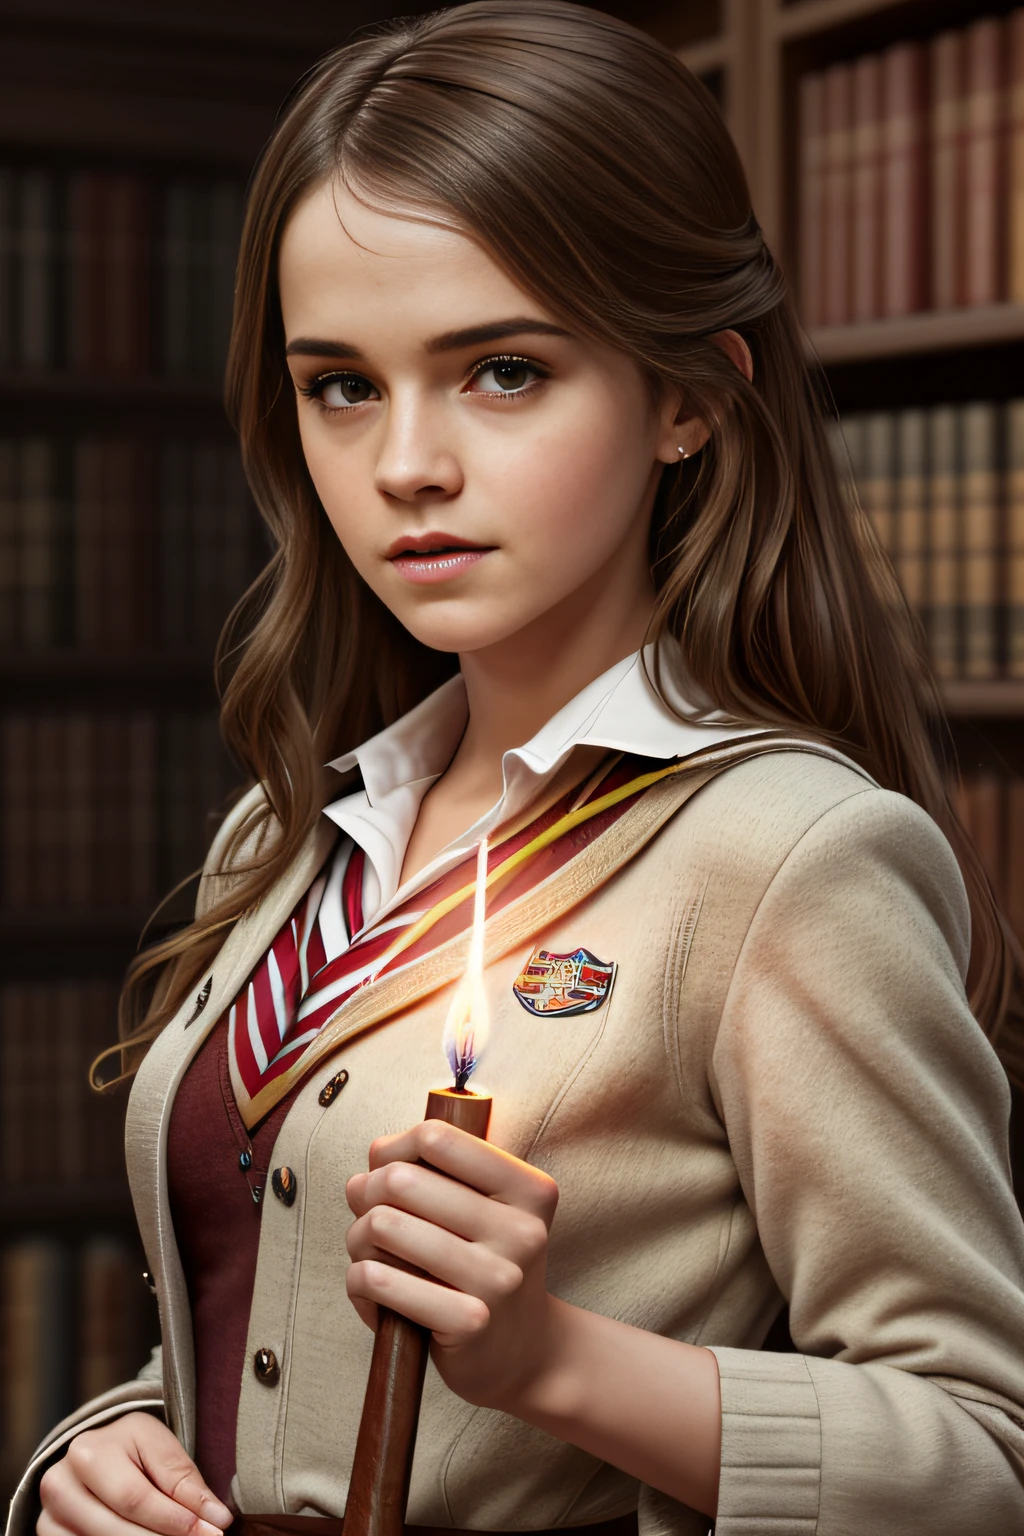 艾瑪華森 (Emma Watson) 飾演妙麗格蘭傑 (Hermione Granger)，身穿經典紅色 , ((只有綠皮書)) 圖書館內, 握住棕色魔杖的尖端,  ((因 Lumos 咒語而發光)), 豐富多彩的, 數位繪畫, 概念藝術, 光滑的, 銳利的焦點, 插圖, 藝術超詳細, 由約翰·布蘭奇修飾, 實際的, 光滑的 face, 完美的眼睛, 對稱, 全身照, 廣角, 銳利的焦點, 8K高清, 極為詳細, 錯綜複雜, 優雅的, artgerm 的藝術